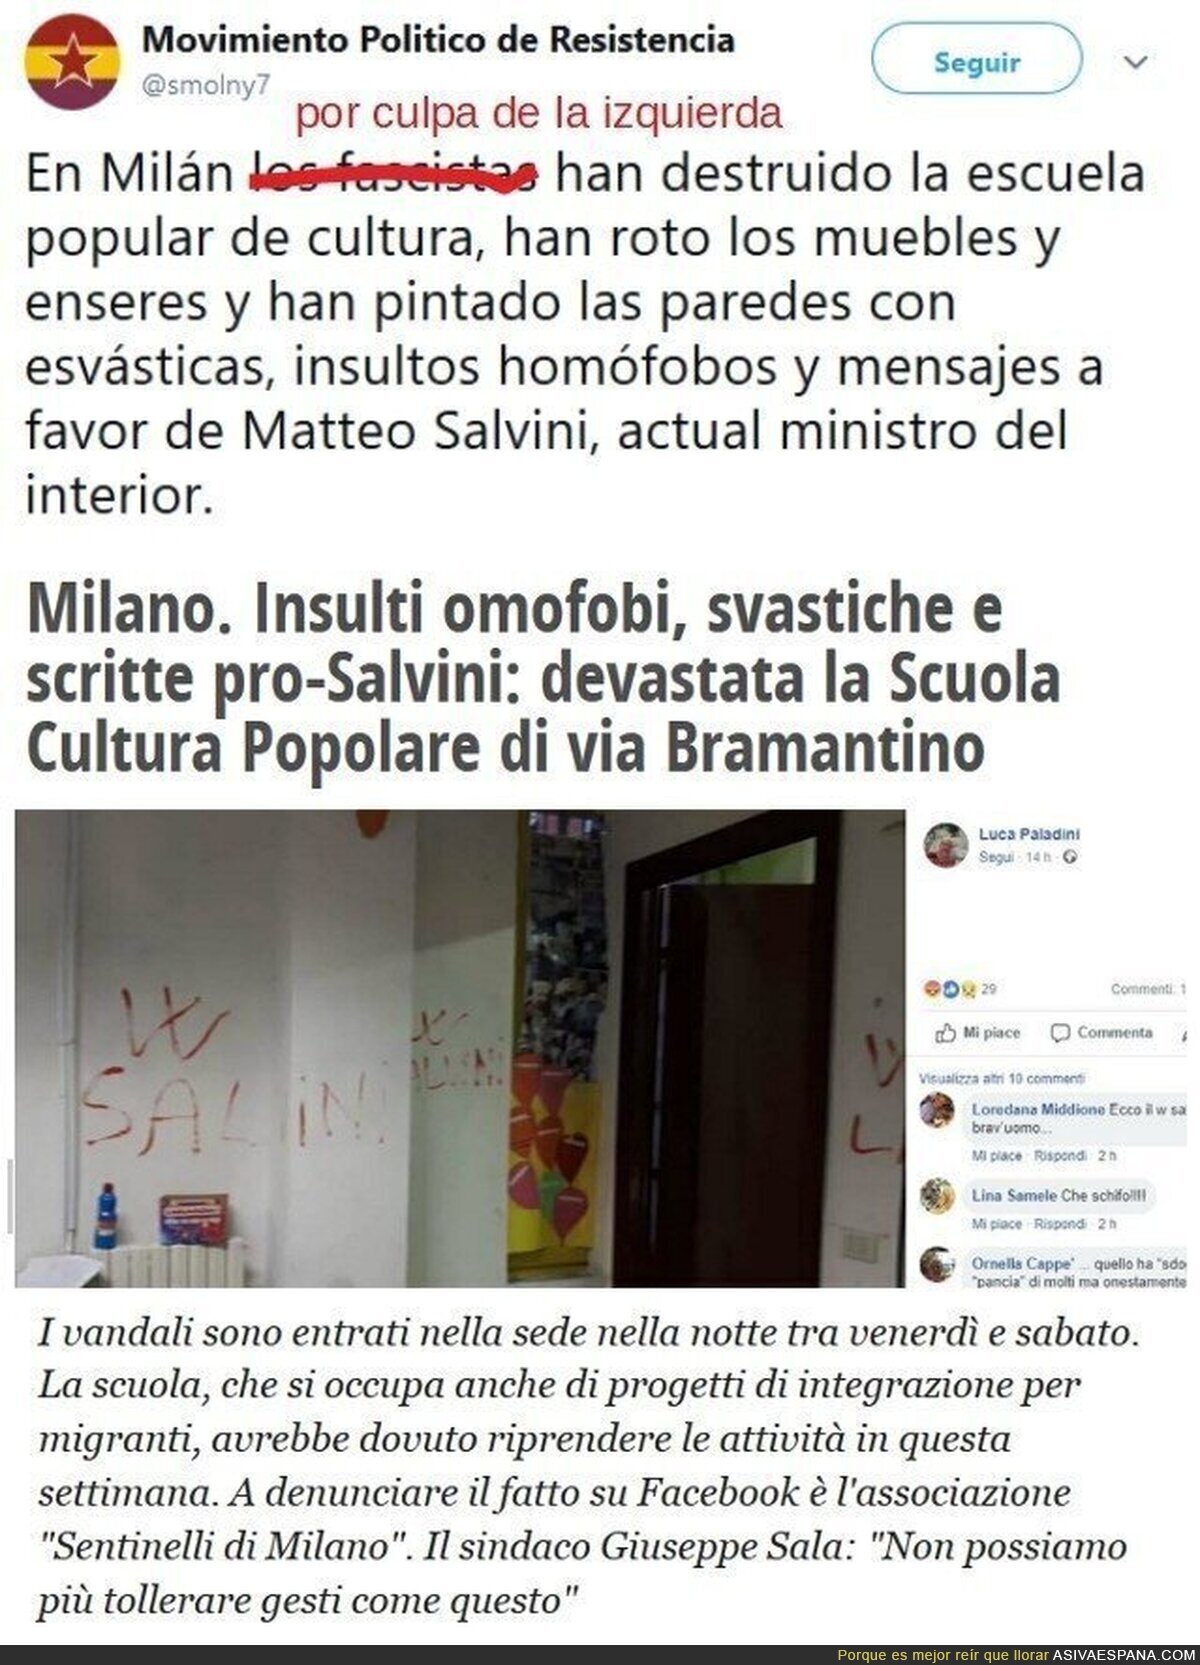 Destrozan la escuela popular de cultura de Milán: insultos homófobos, esvásticas y pintadas pro Salvini